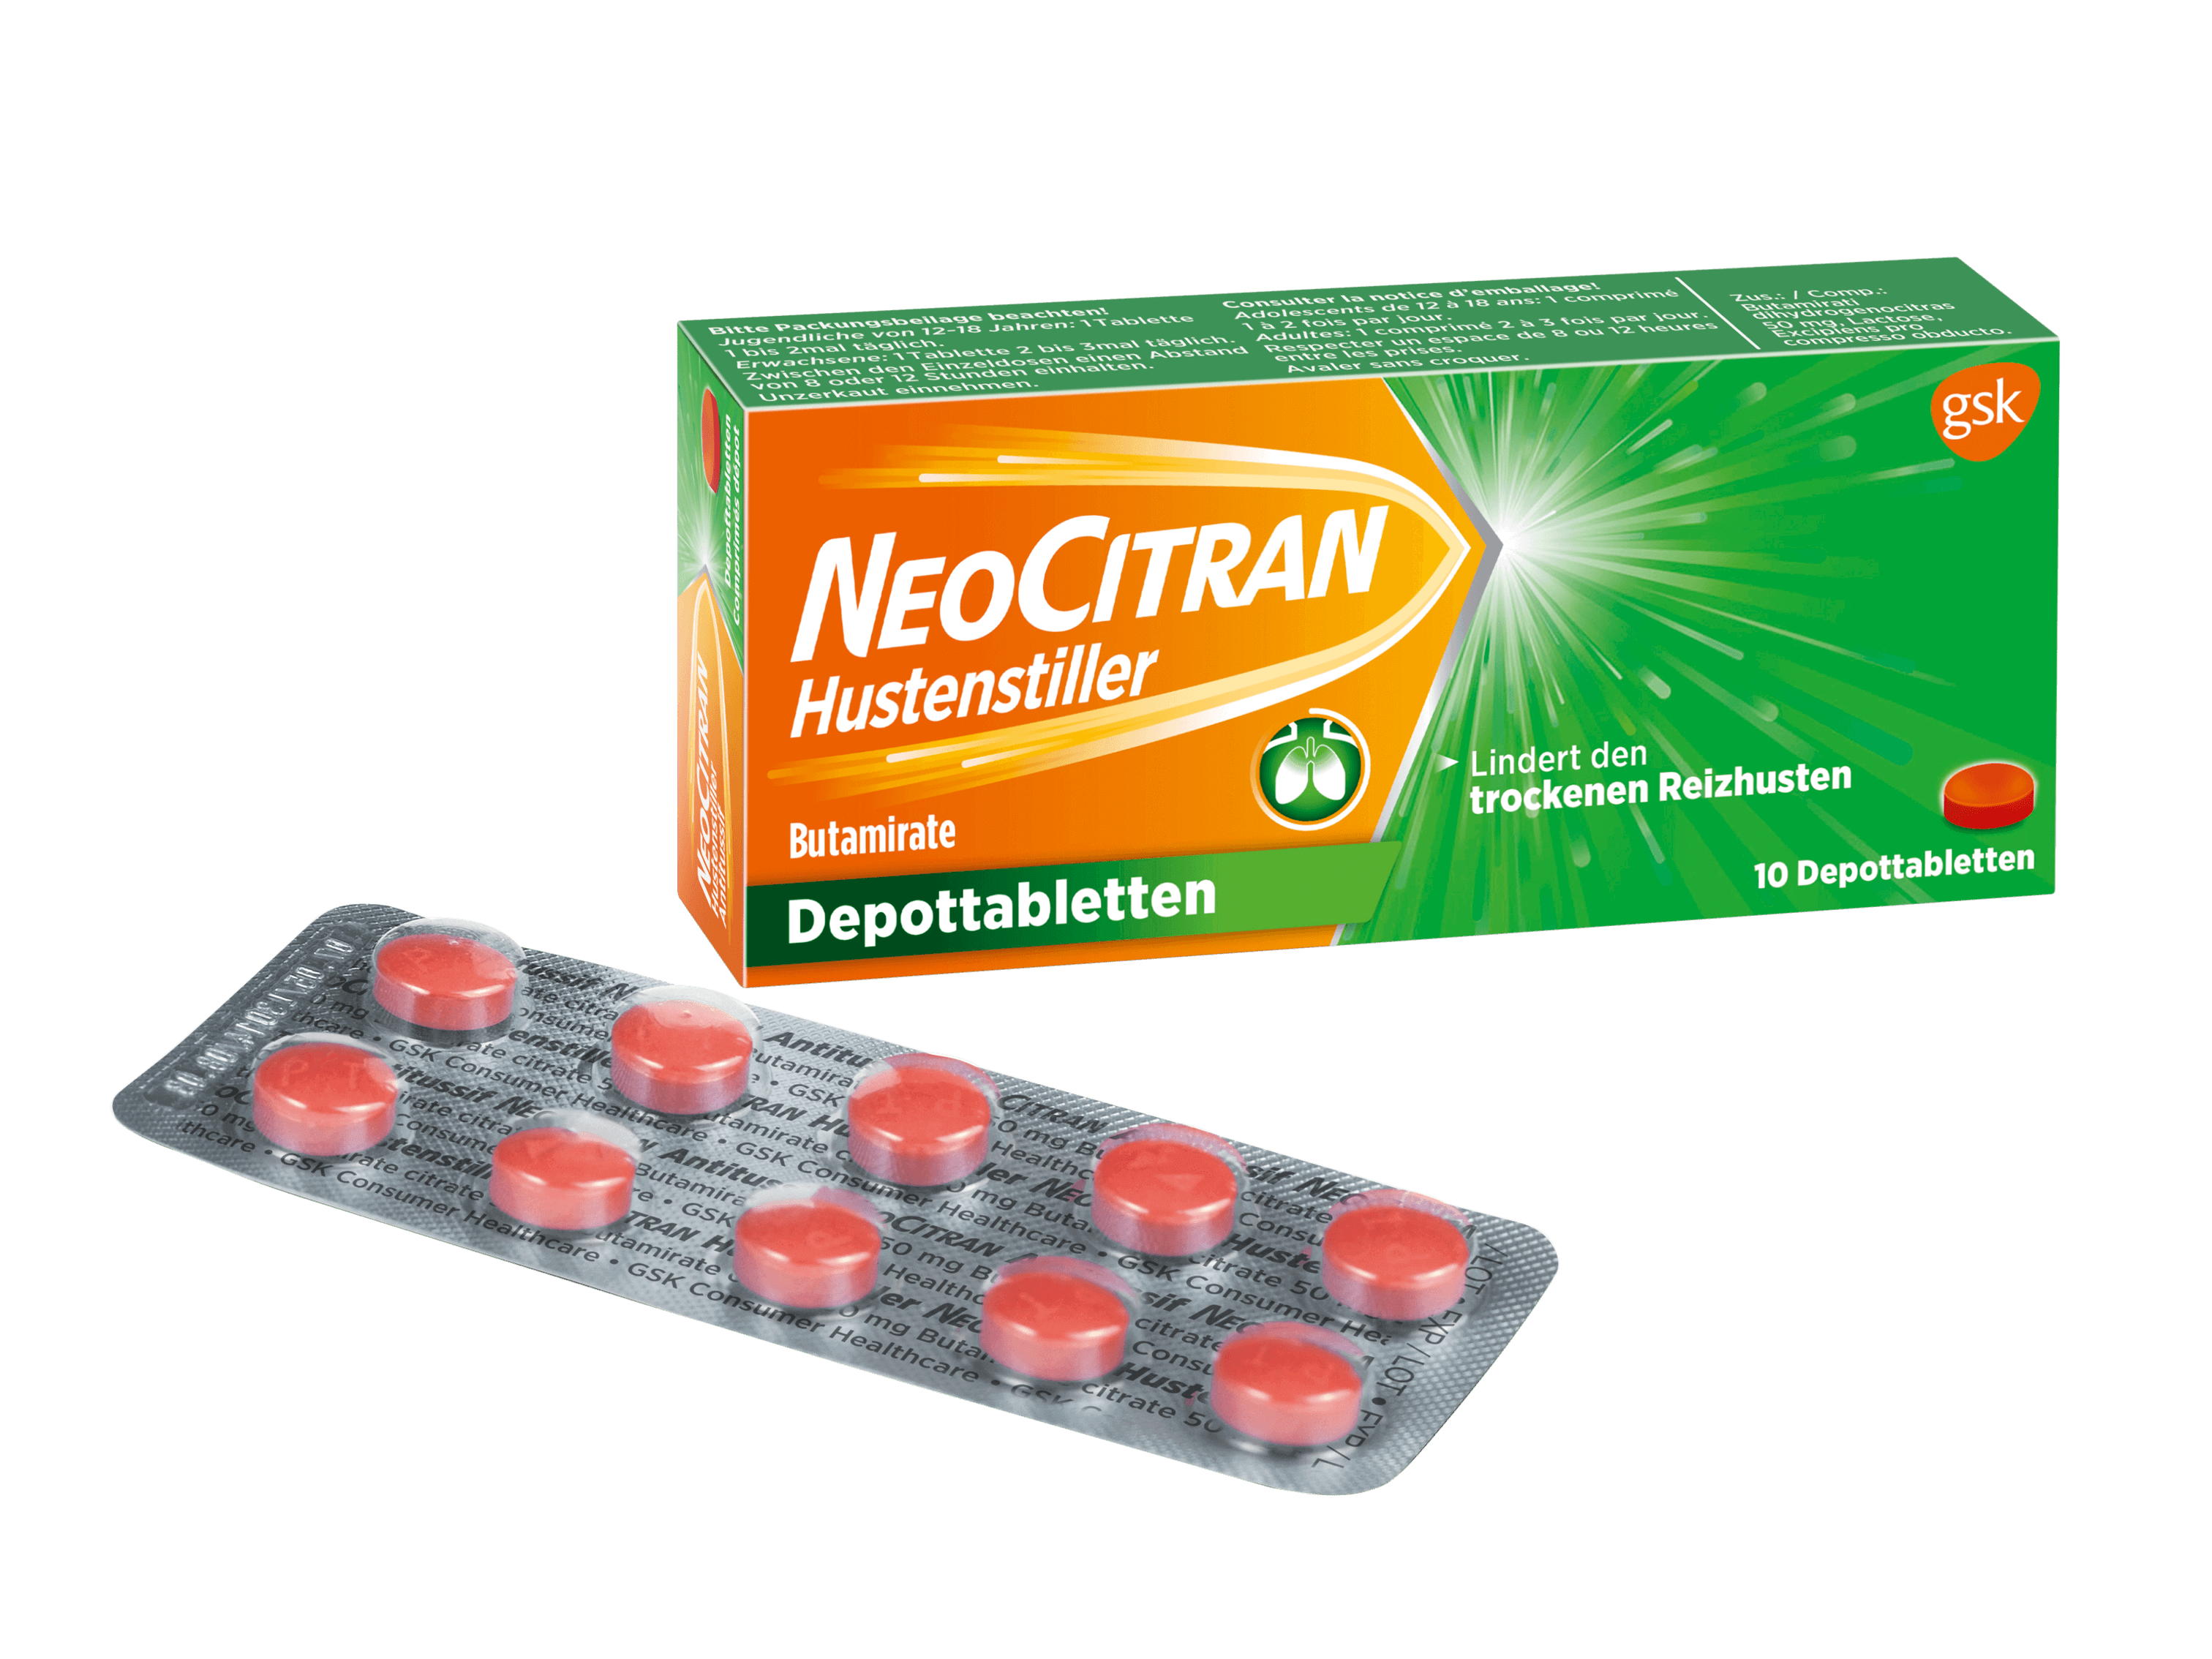 NeoCitran Hustenstiller Depot-Tabletten